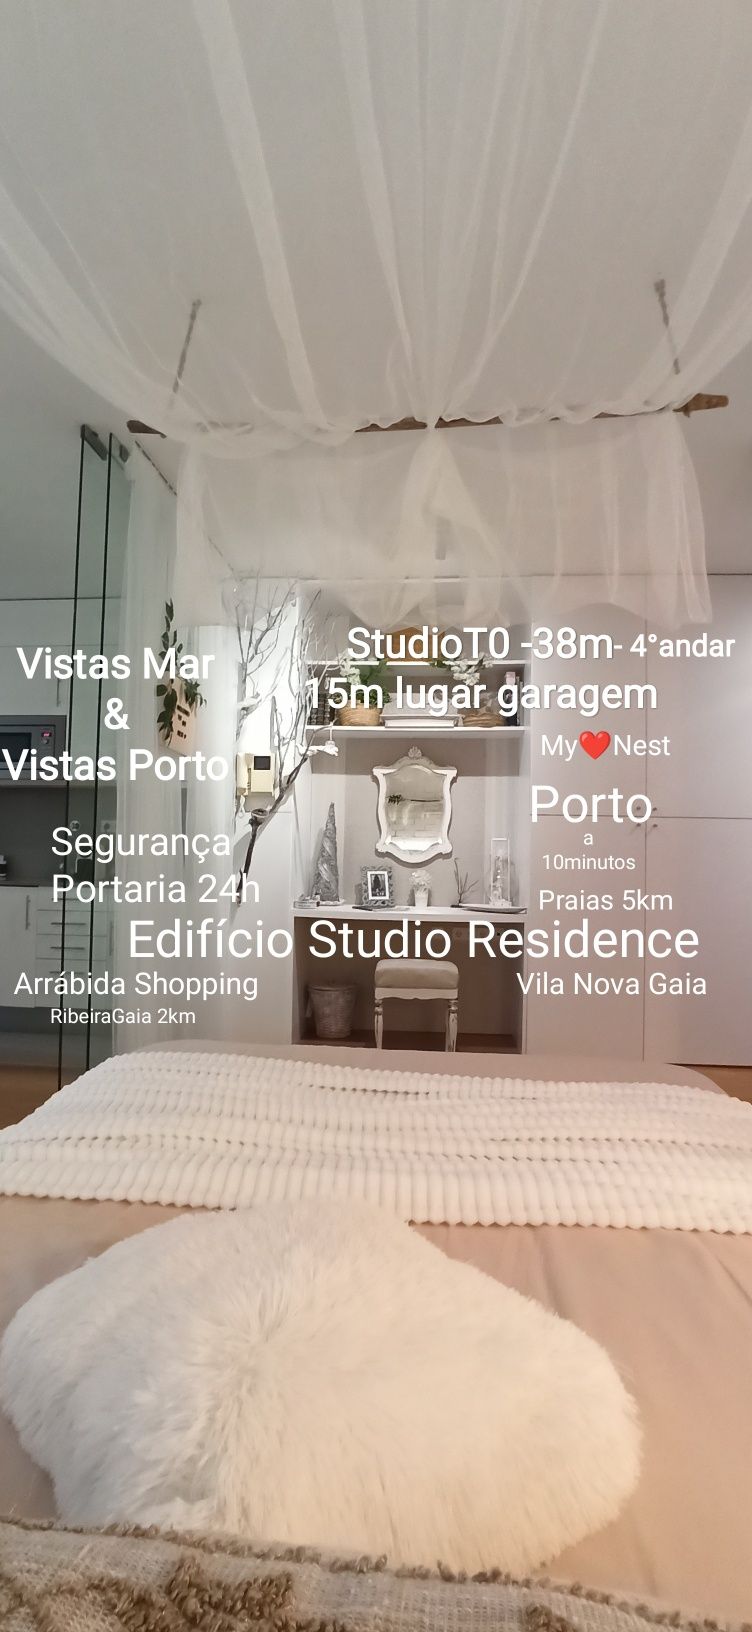 ApartamentoT0 StudioResidence-Arrábida Shopping-Vista Porto e Mar